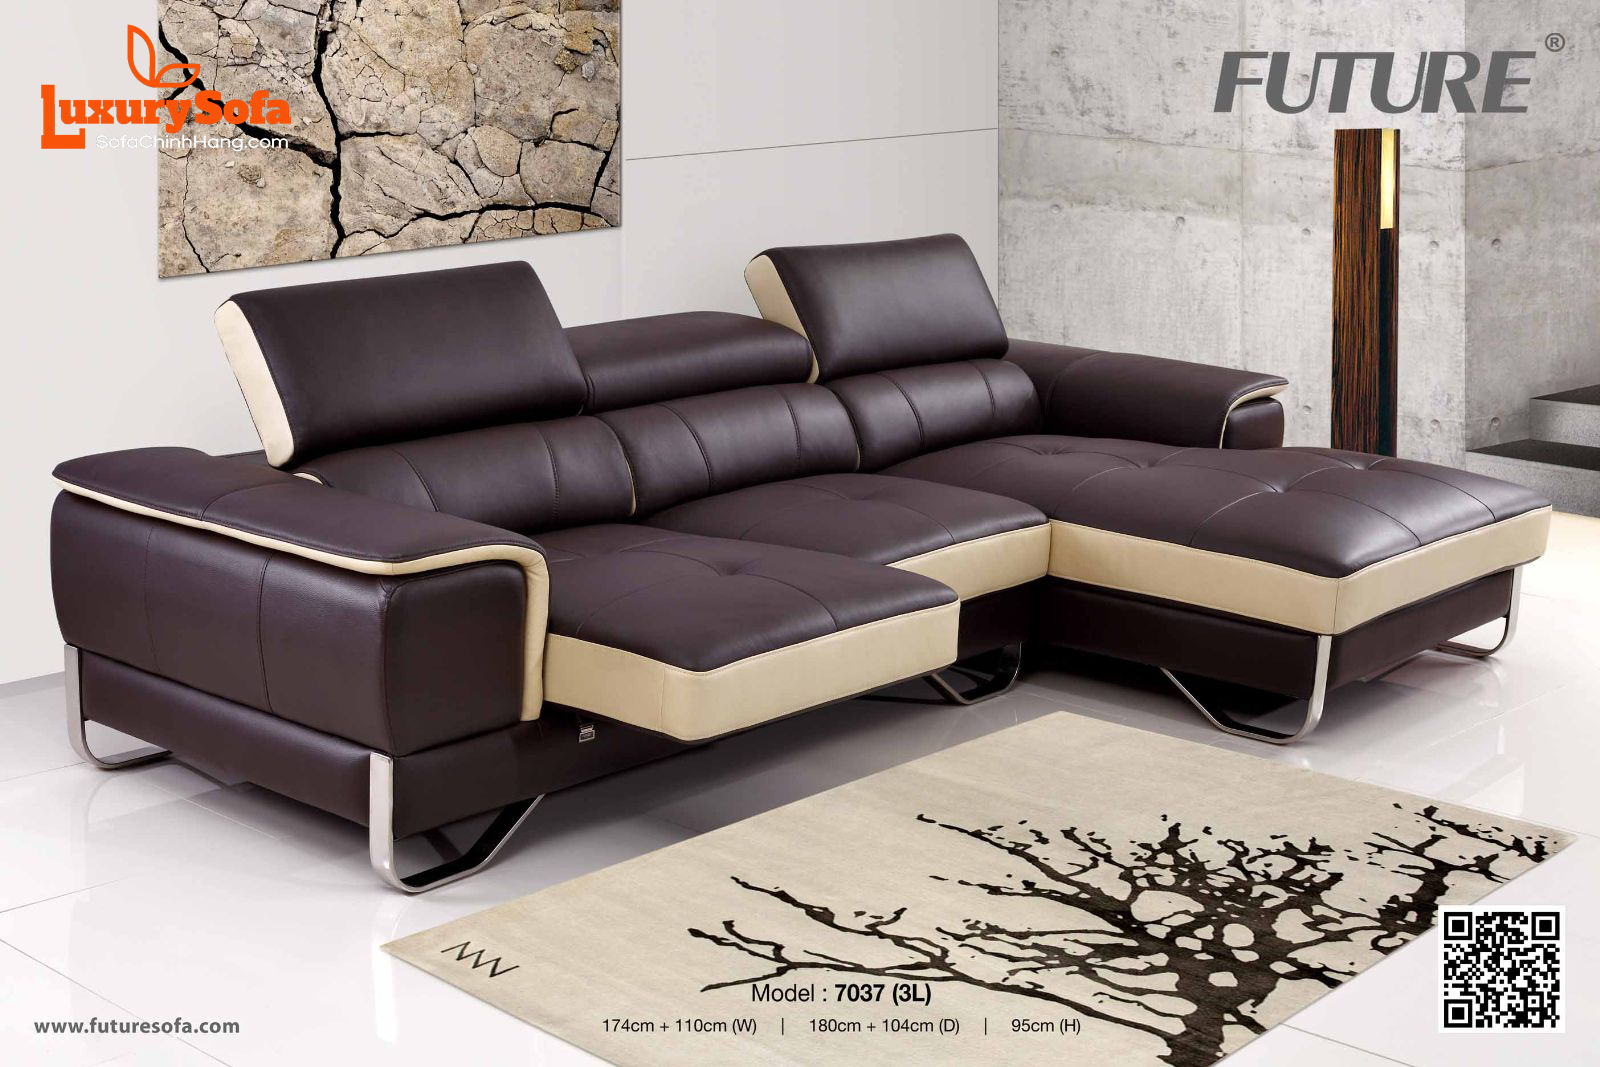 Bộ ghế sofa phòng khách giá dưới 10 triệu sẽ là sự lựa chọn tuyệt vời cho những ai muốn trang trí không gian sống của mình mà không tốn quá nhiều chi phí. Với thiết kế đơn giản nhưng hiện đại, chất liệu và độ bền cao, sản phẩm này sẽ tạo nên một môi trường thoải mái, thư giãn cho gia đình.